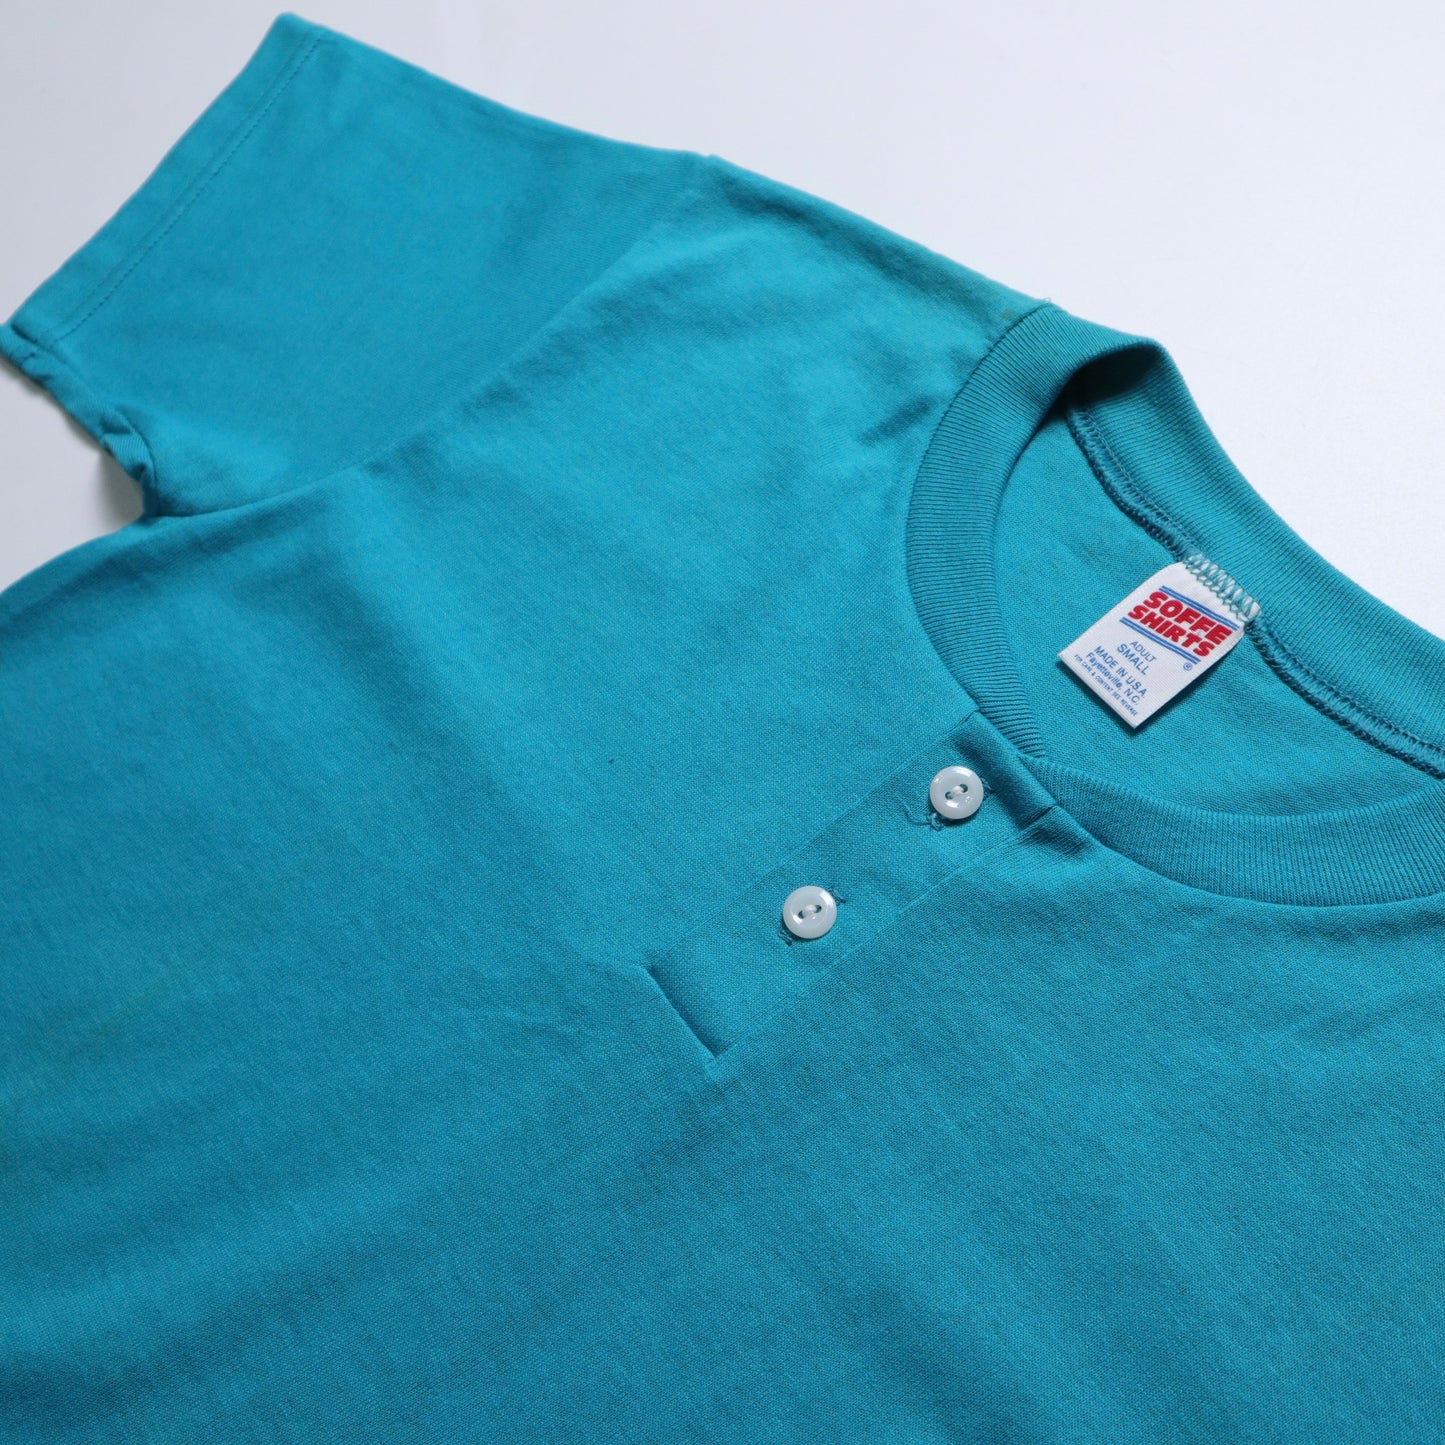 80/90s アメリカ製 SOFFE Shirts ティール ヘンリーカラー Tシャツ